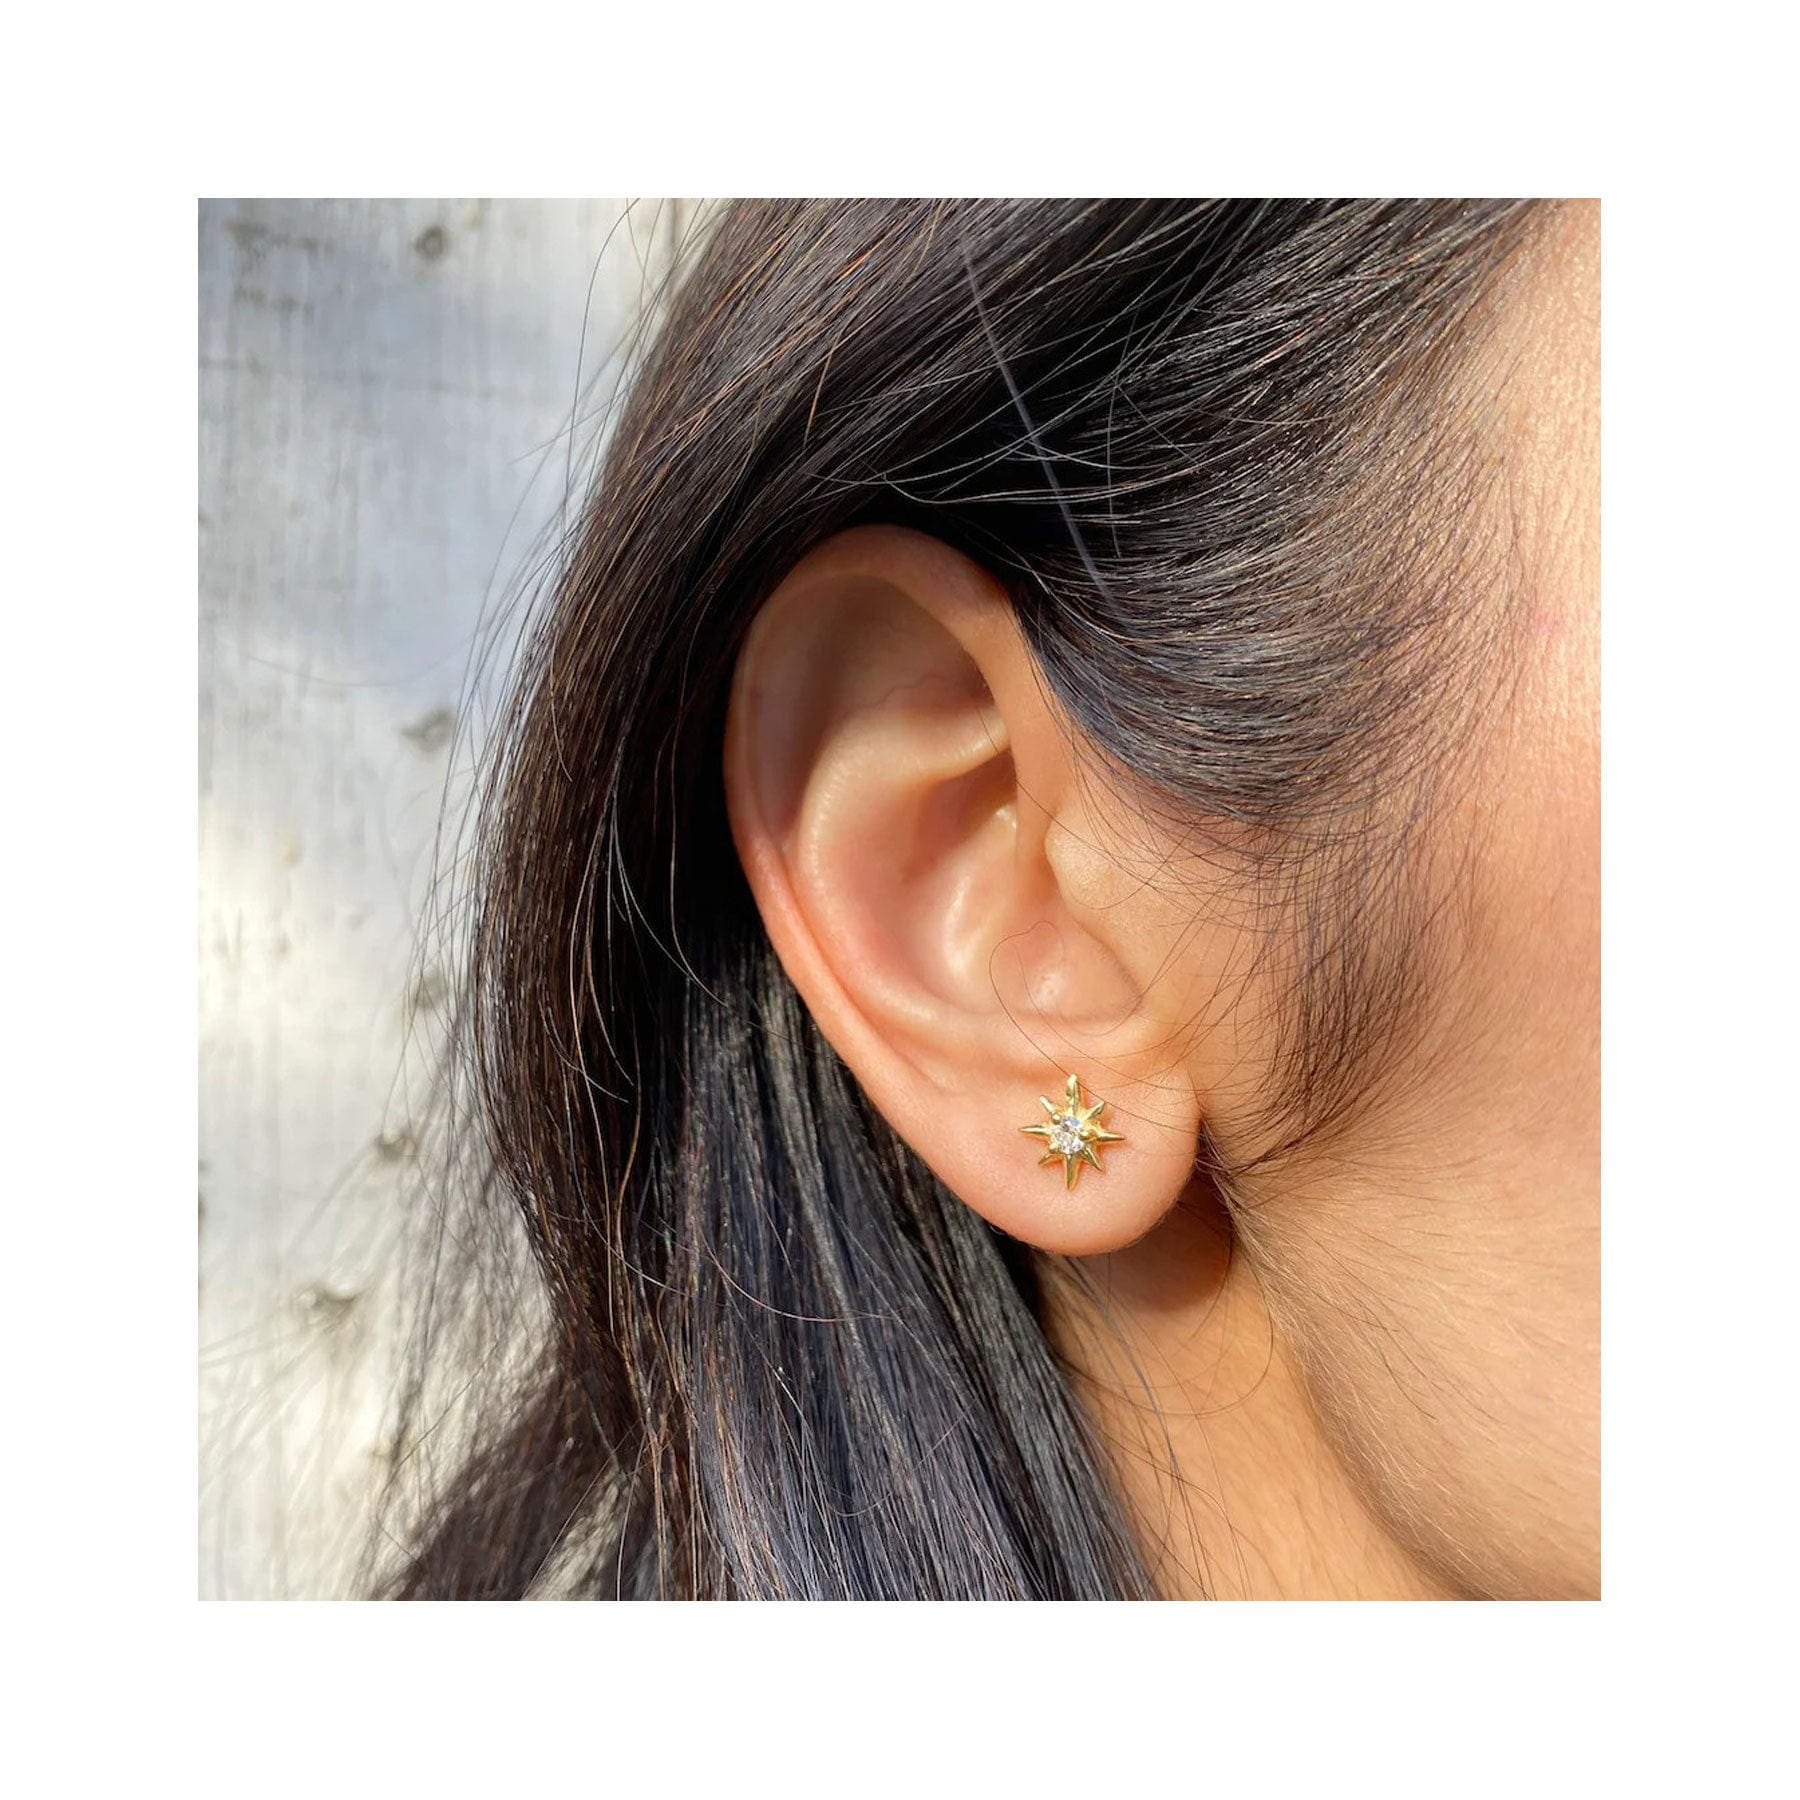 Star earrings gold